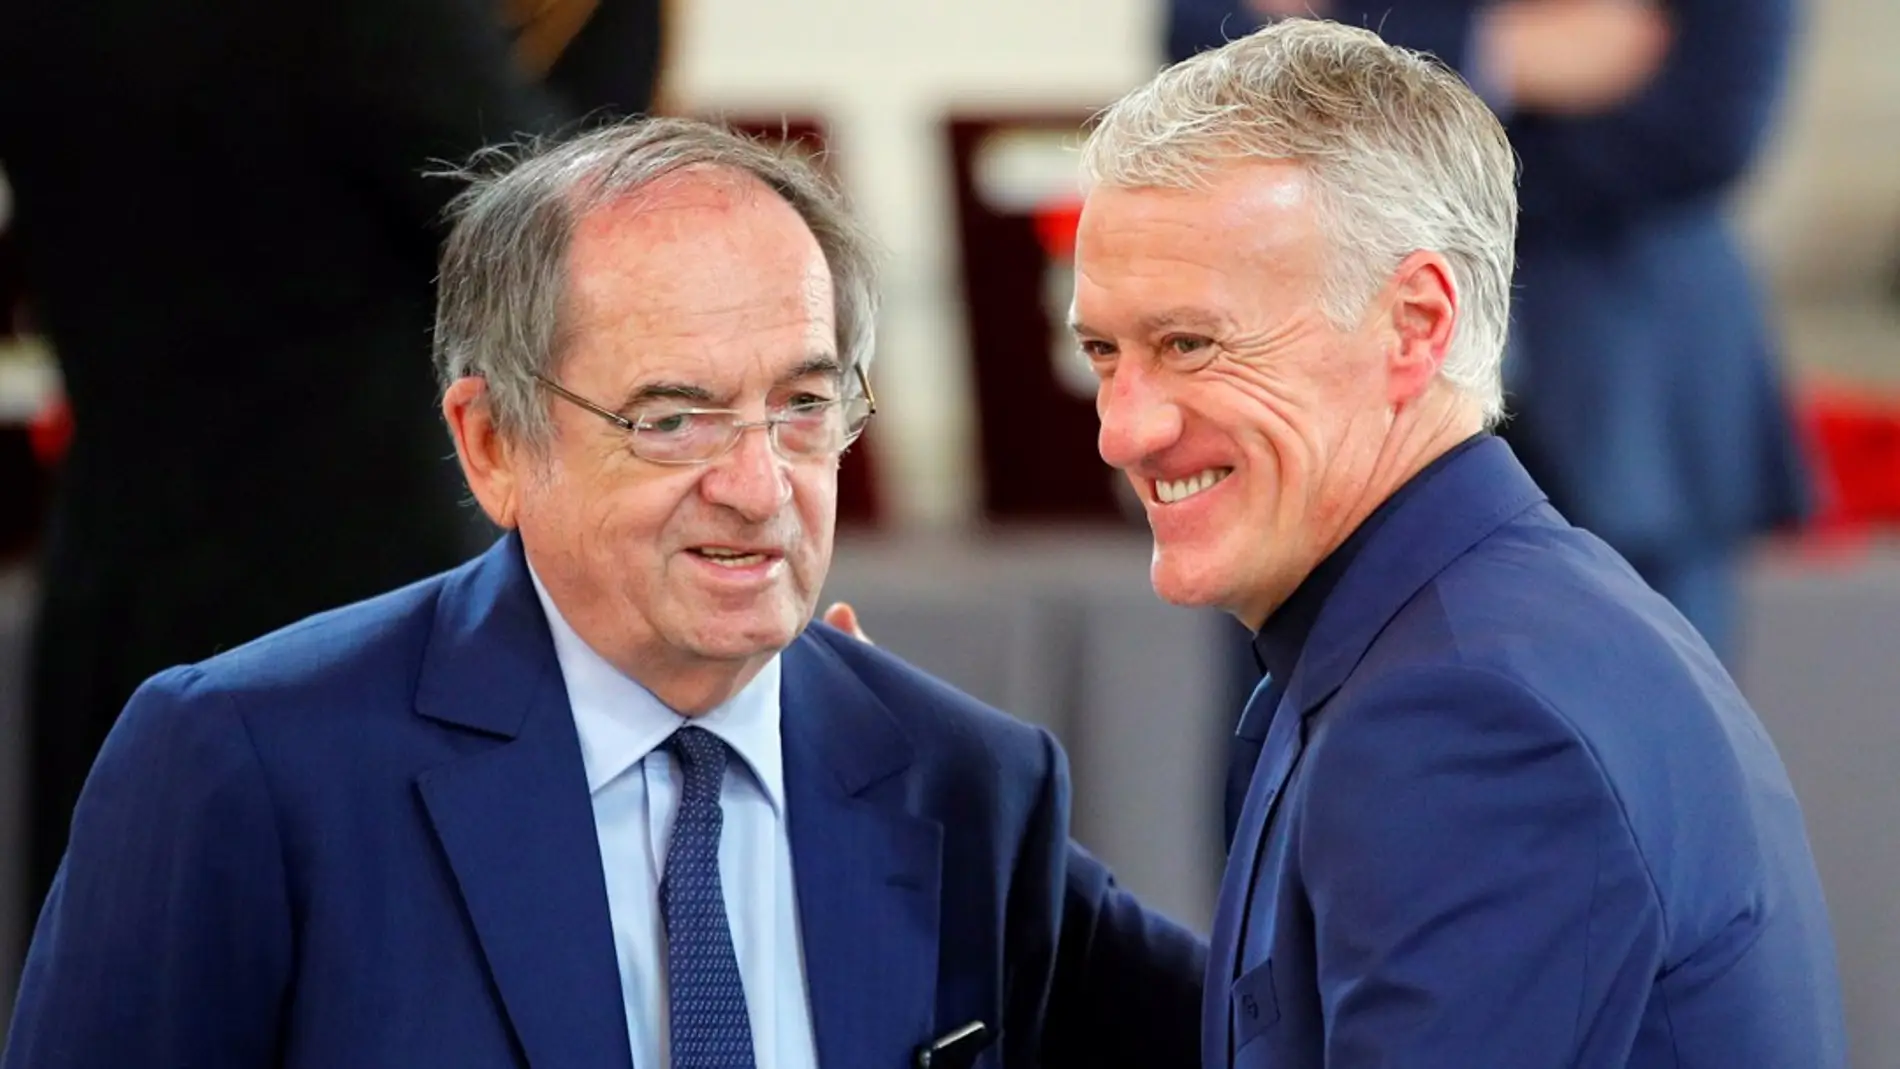 El presidente de la federación francesa pide disculpas a Zidane